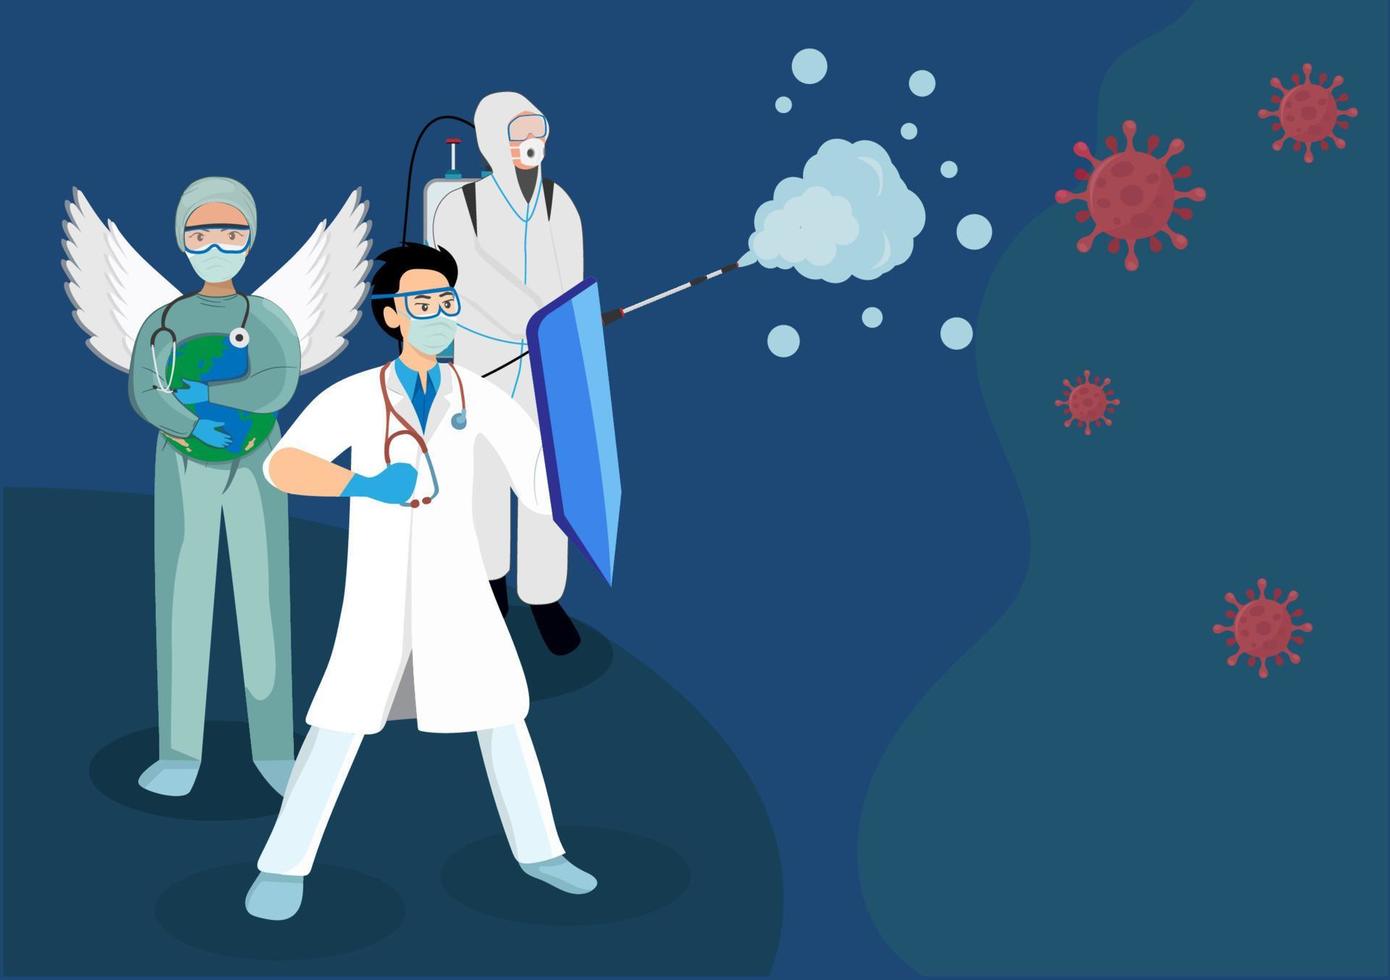 artsen, verpleegkundigen en wetenschappers die strijden tegen het coronavirus 2019 dat wereldwijd een pandemie is. vlakke stijl cartoon illustratie vector